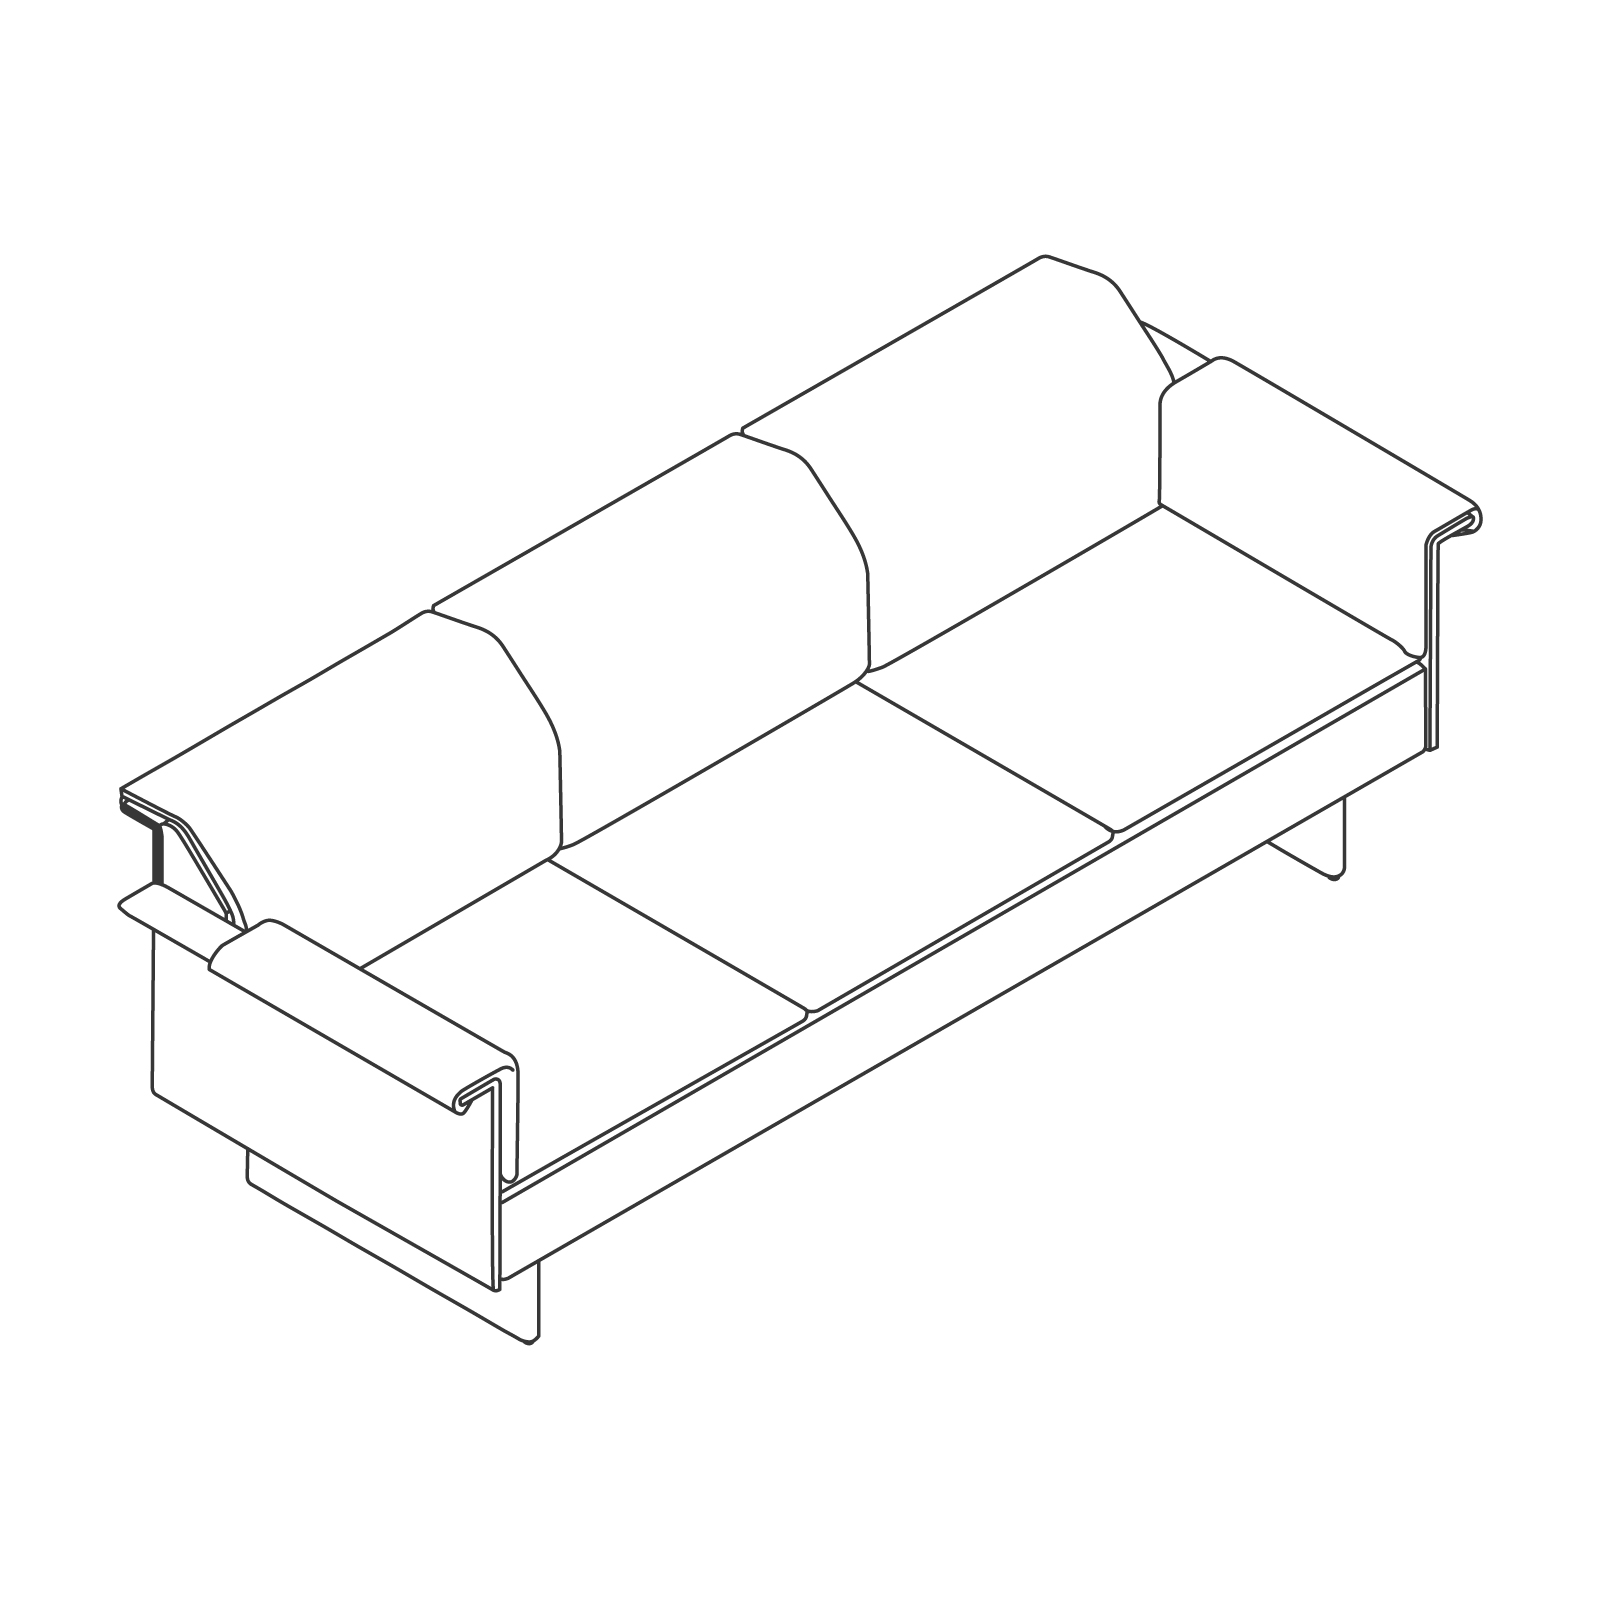 Eine Zeichnung - Mantle Sofa – mit Armlehnen